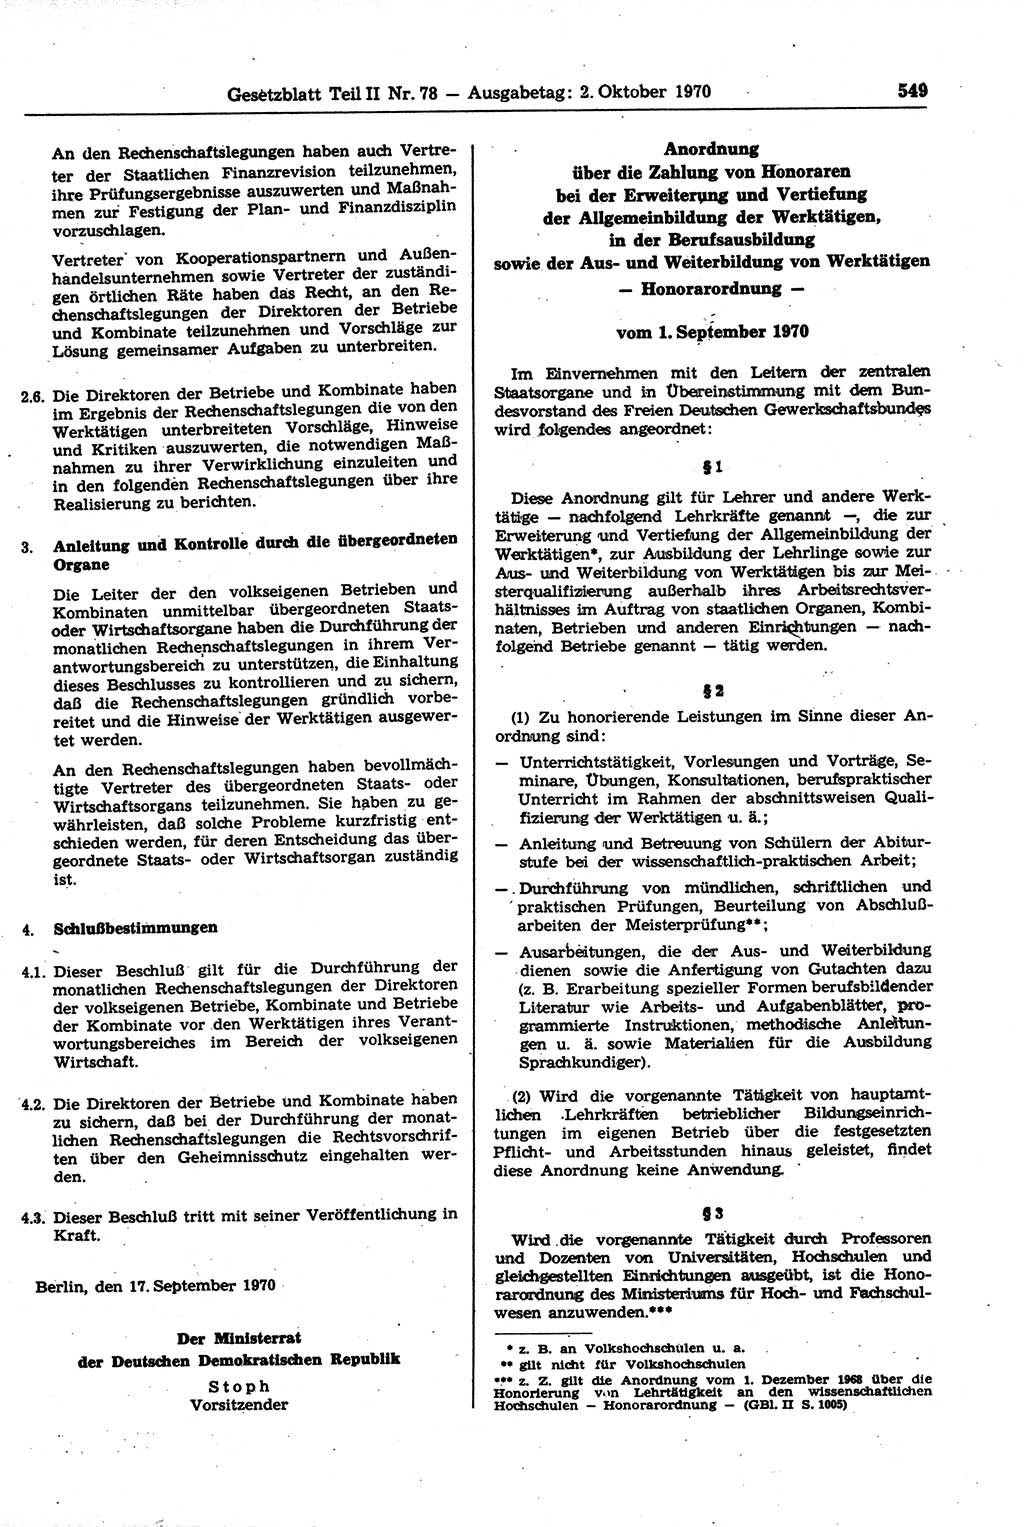 Gesetzblatt (GBl.) der Deutschen Demokratischen Republik (DDR) Teil ⅠⅠ 1970, Seite 549 (GBl. DDR ⅠⅠ 1970, S. 549)